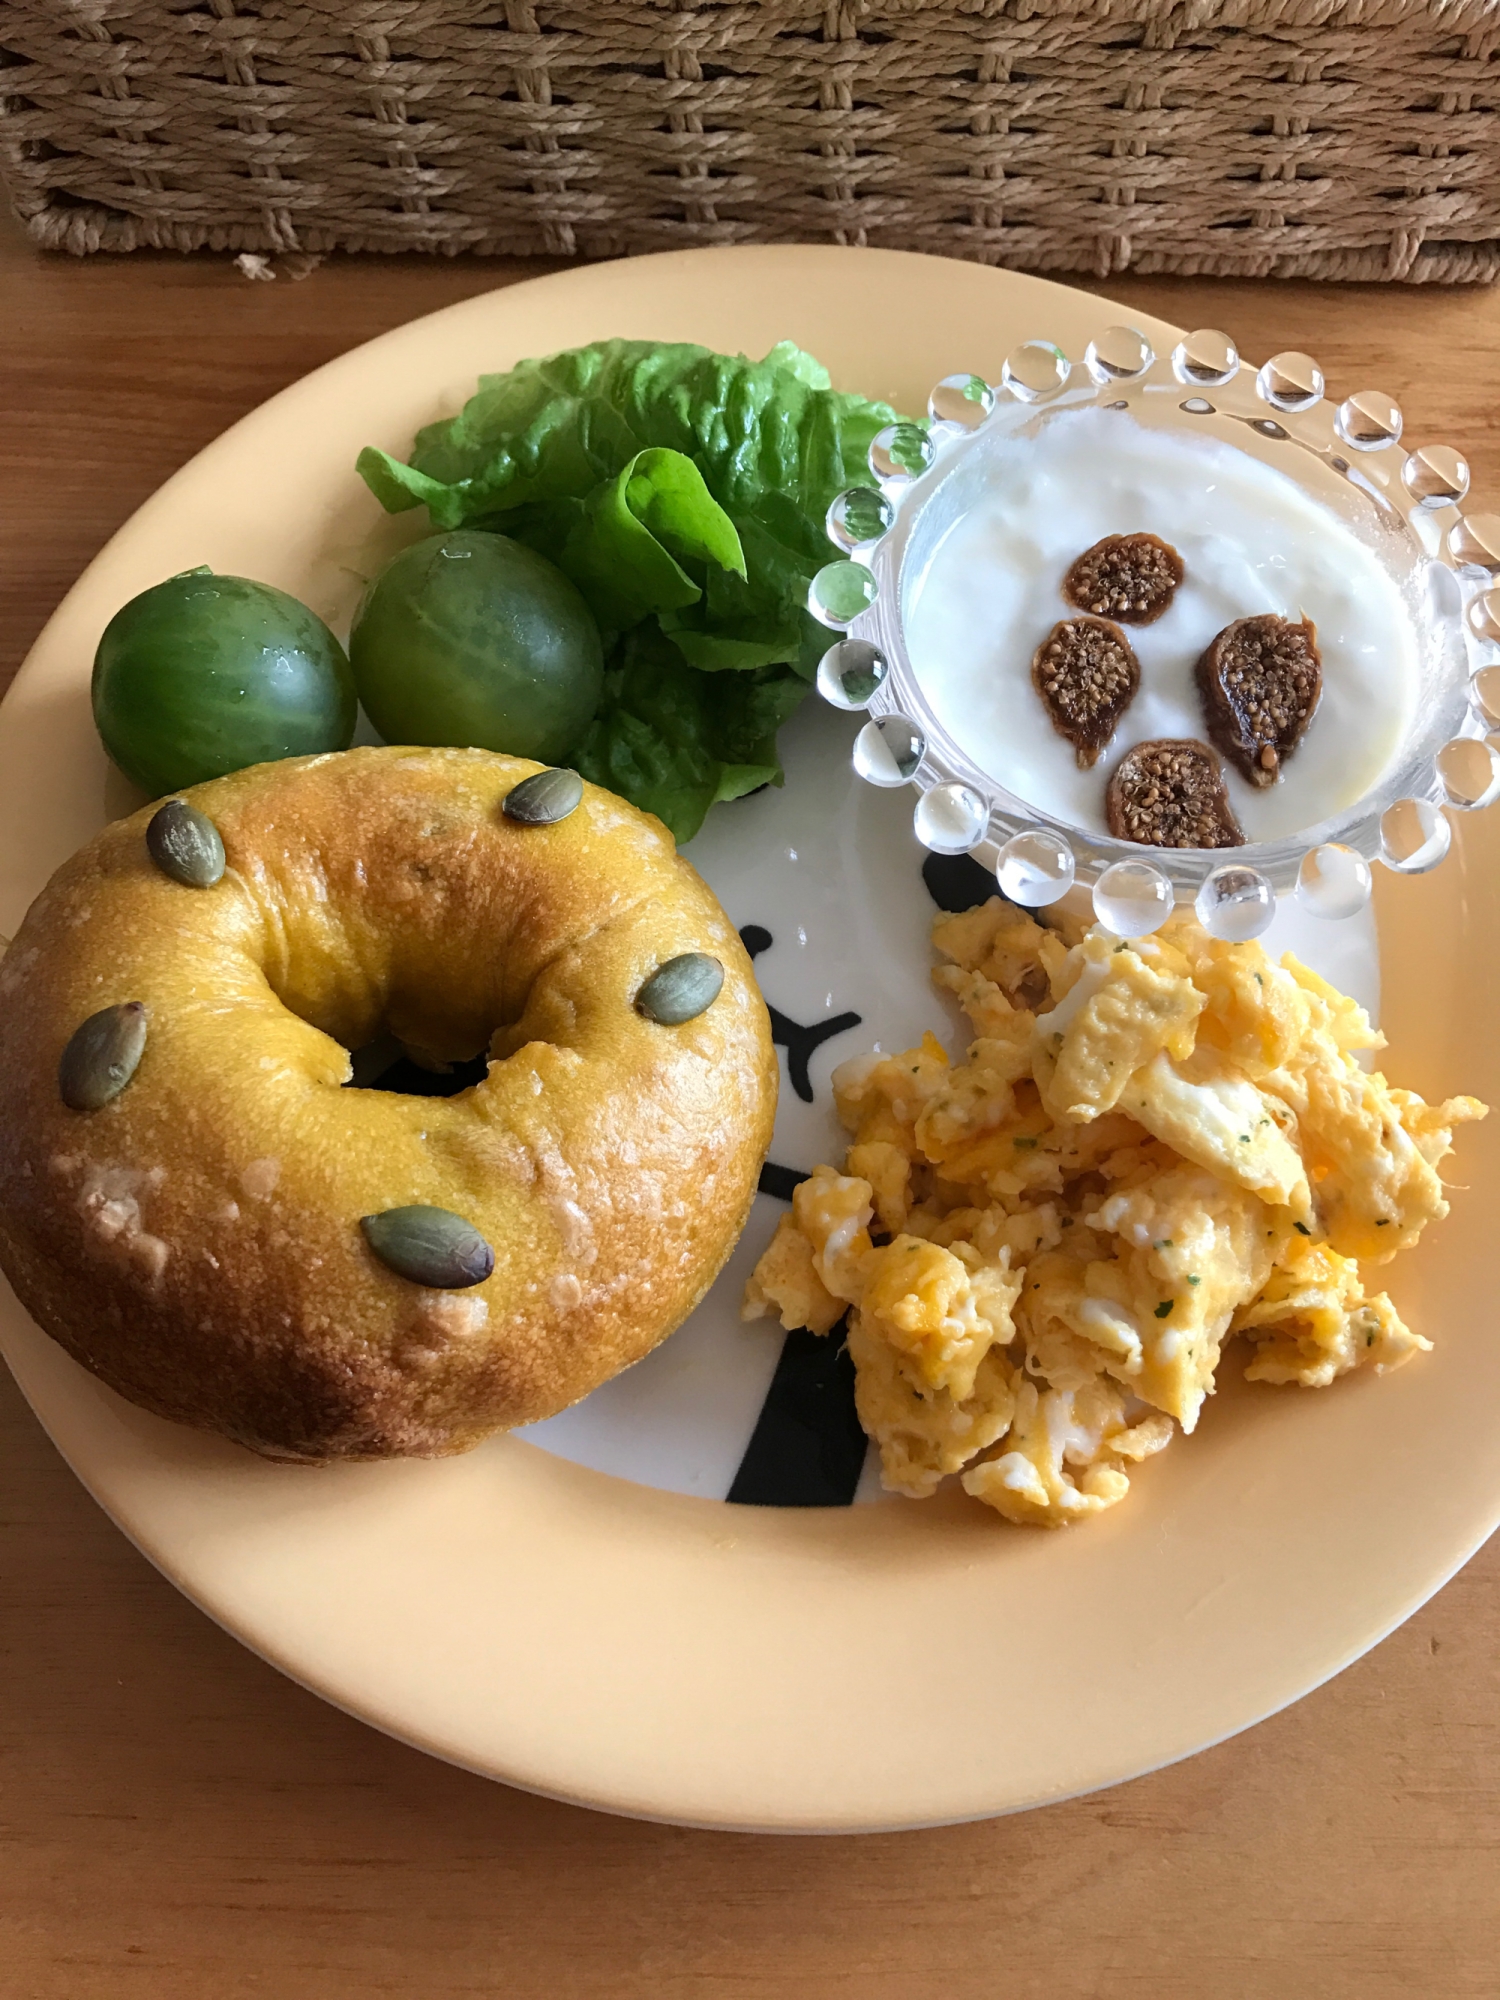 ベーグルと炒り卵、イチジクヨーグルトの朝ごはん